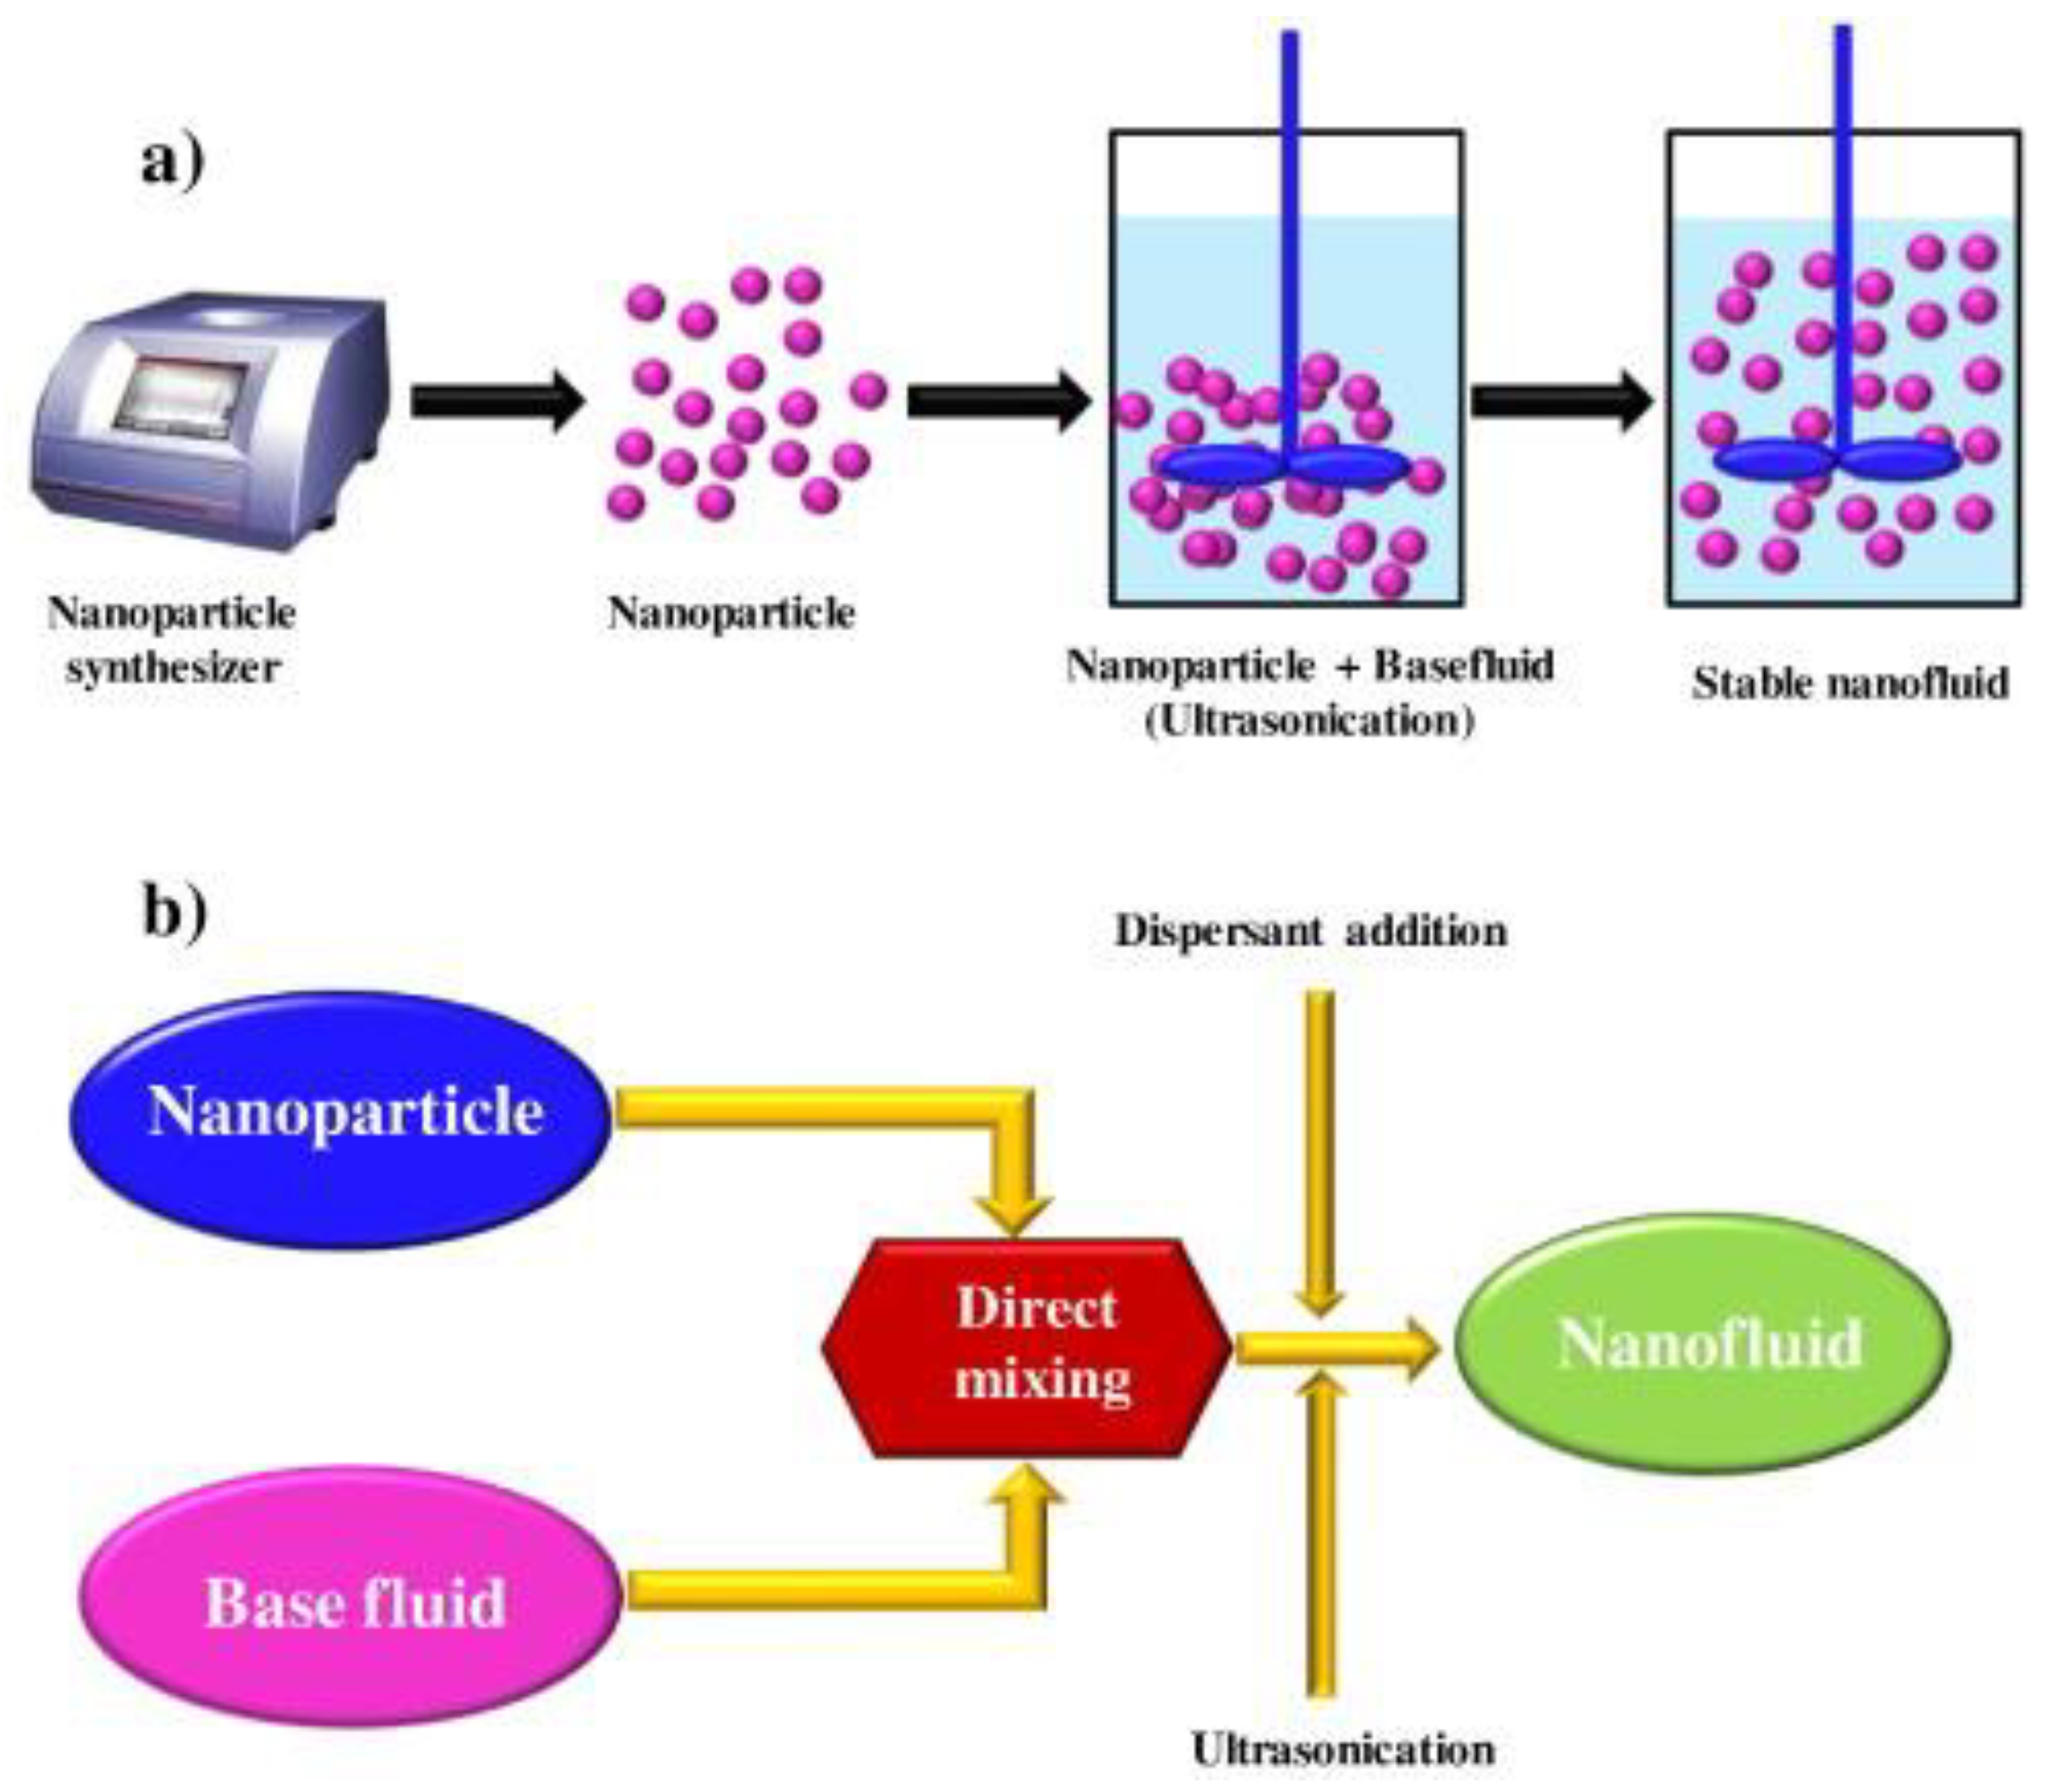 literature review on nanofluids